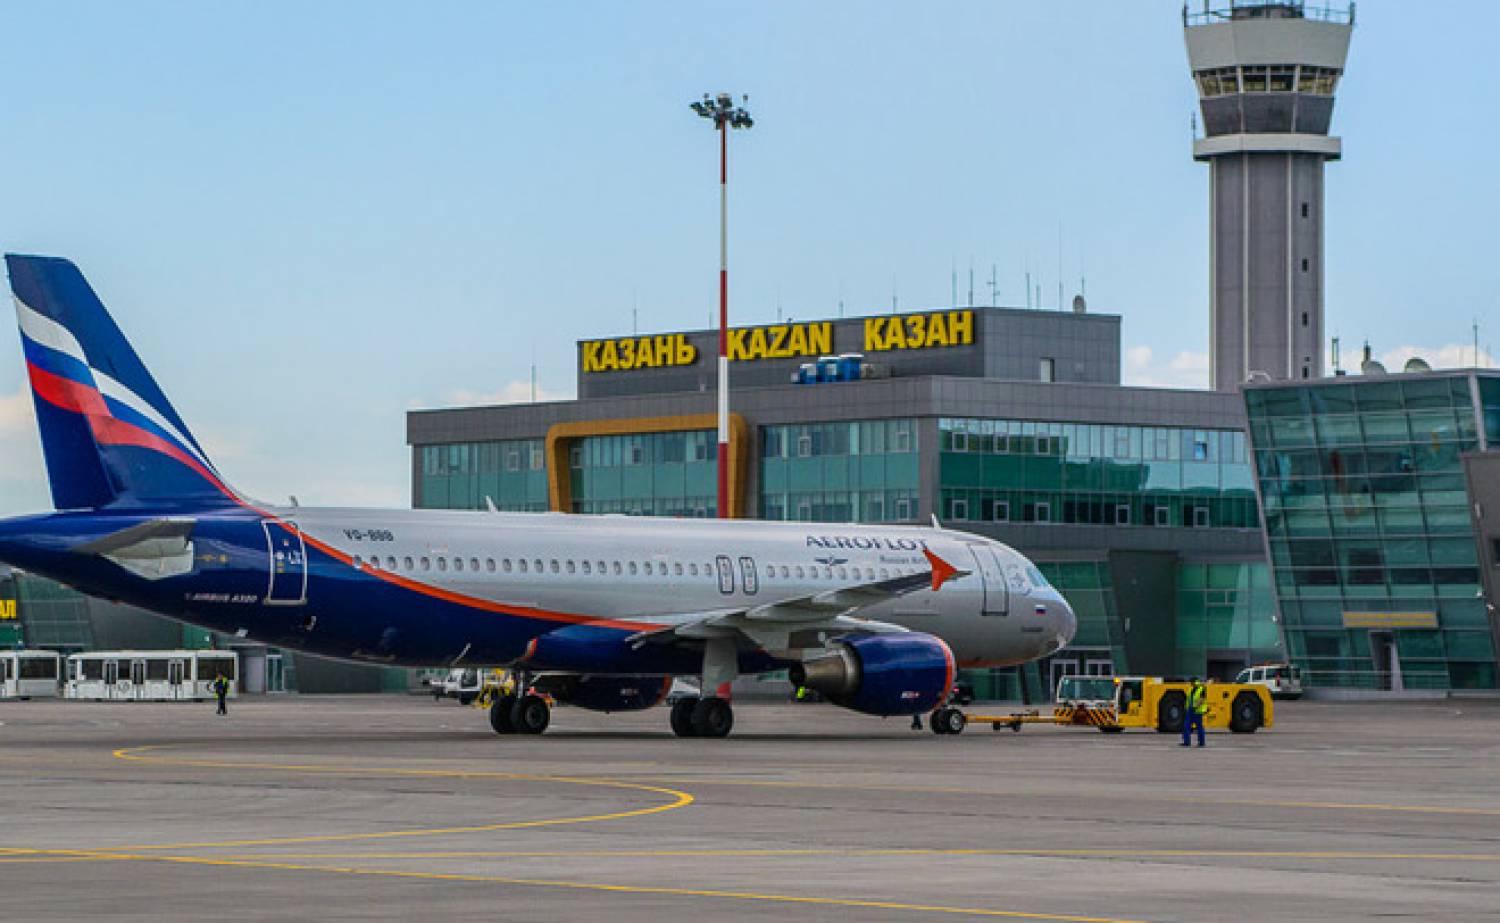 Вылет самолета из Казани задержали из-за повреждения покрытия корпуса